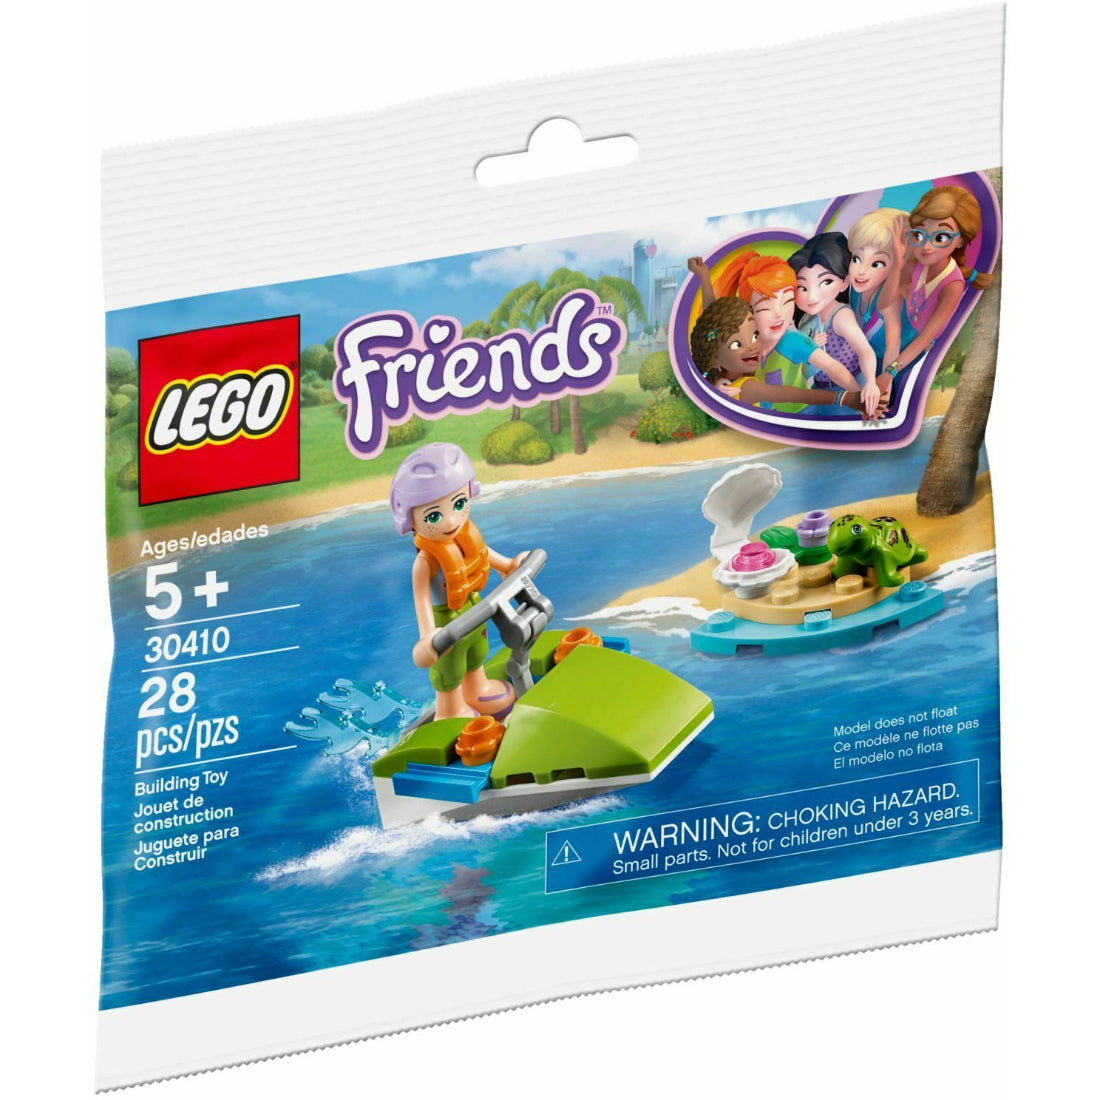 LEGO Friends diversión Acuatica de Mia (30410)